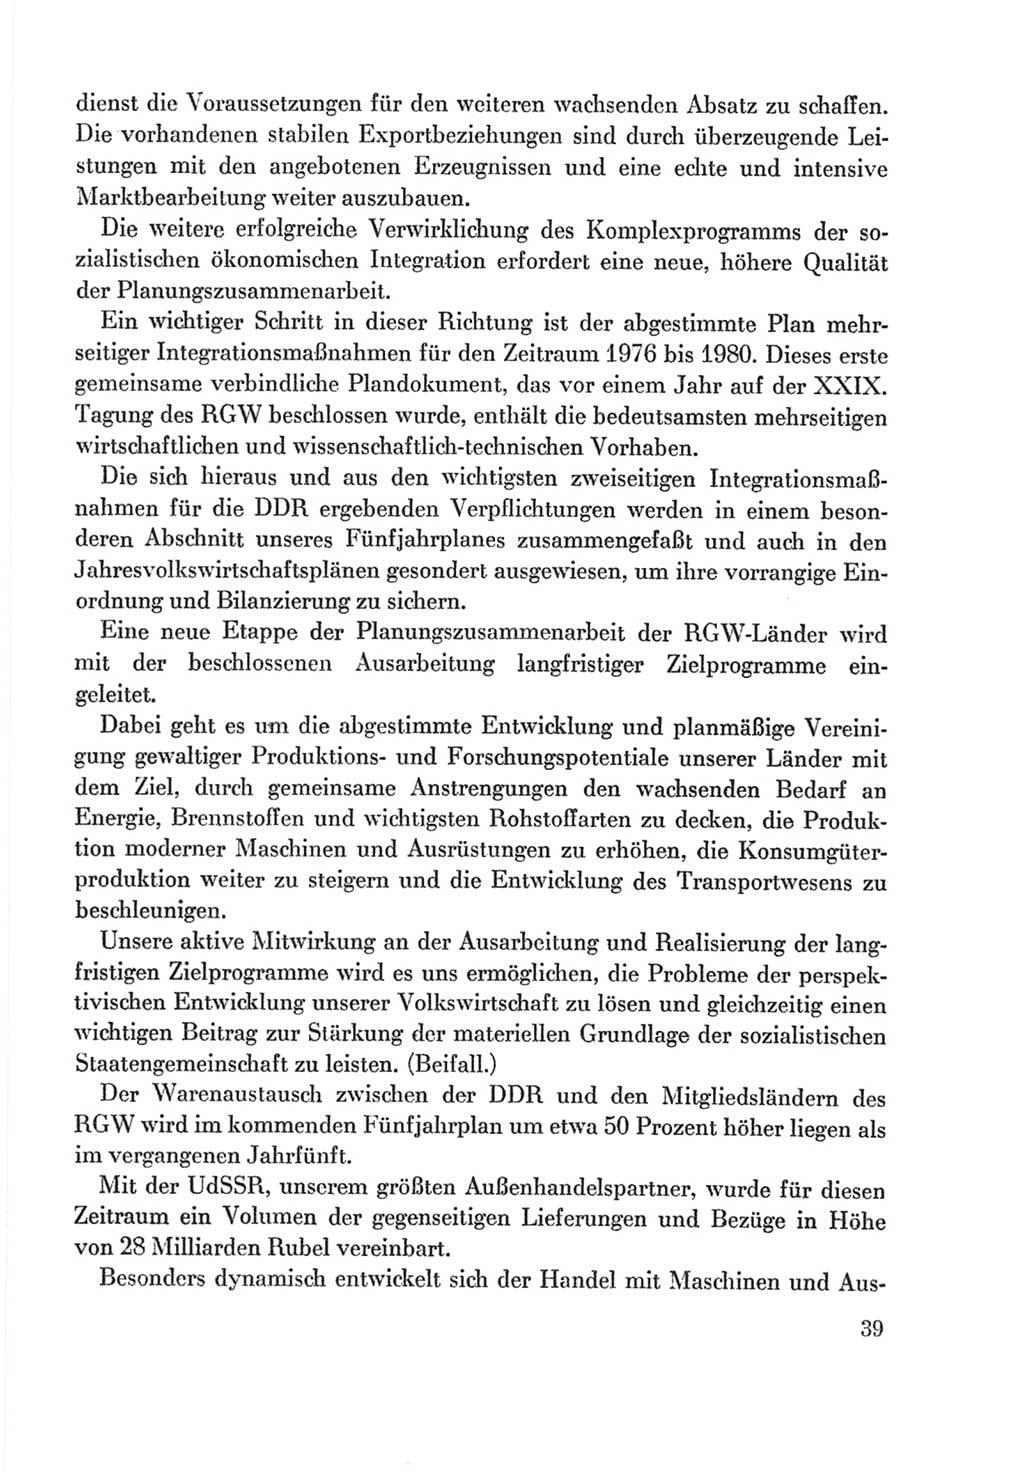 Protokoll der Verhandlungen des Ⅸ. Parteitages der Sozialistischen Einheitspartei Deutschlands (SED) [Deutsche Demokratische Republik (DDR)] 1976, Band 2, Seite 39 (Prot. Verh. Ⅸ. PT SED DDR 1976, Bd. 2, S. 39)